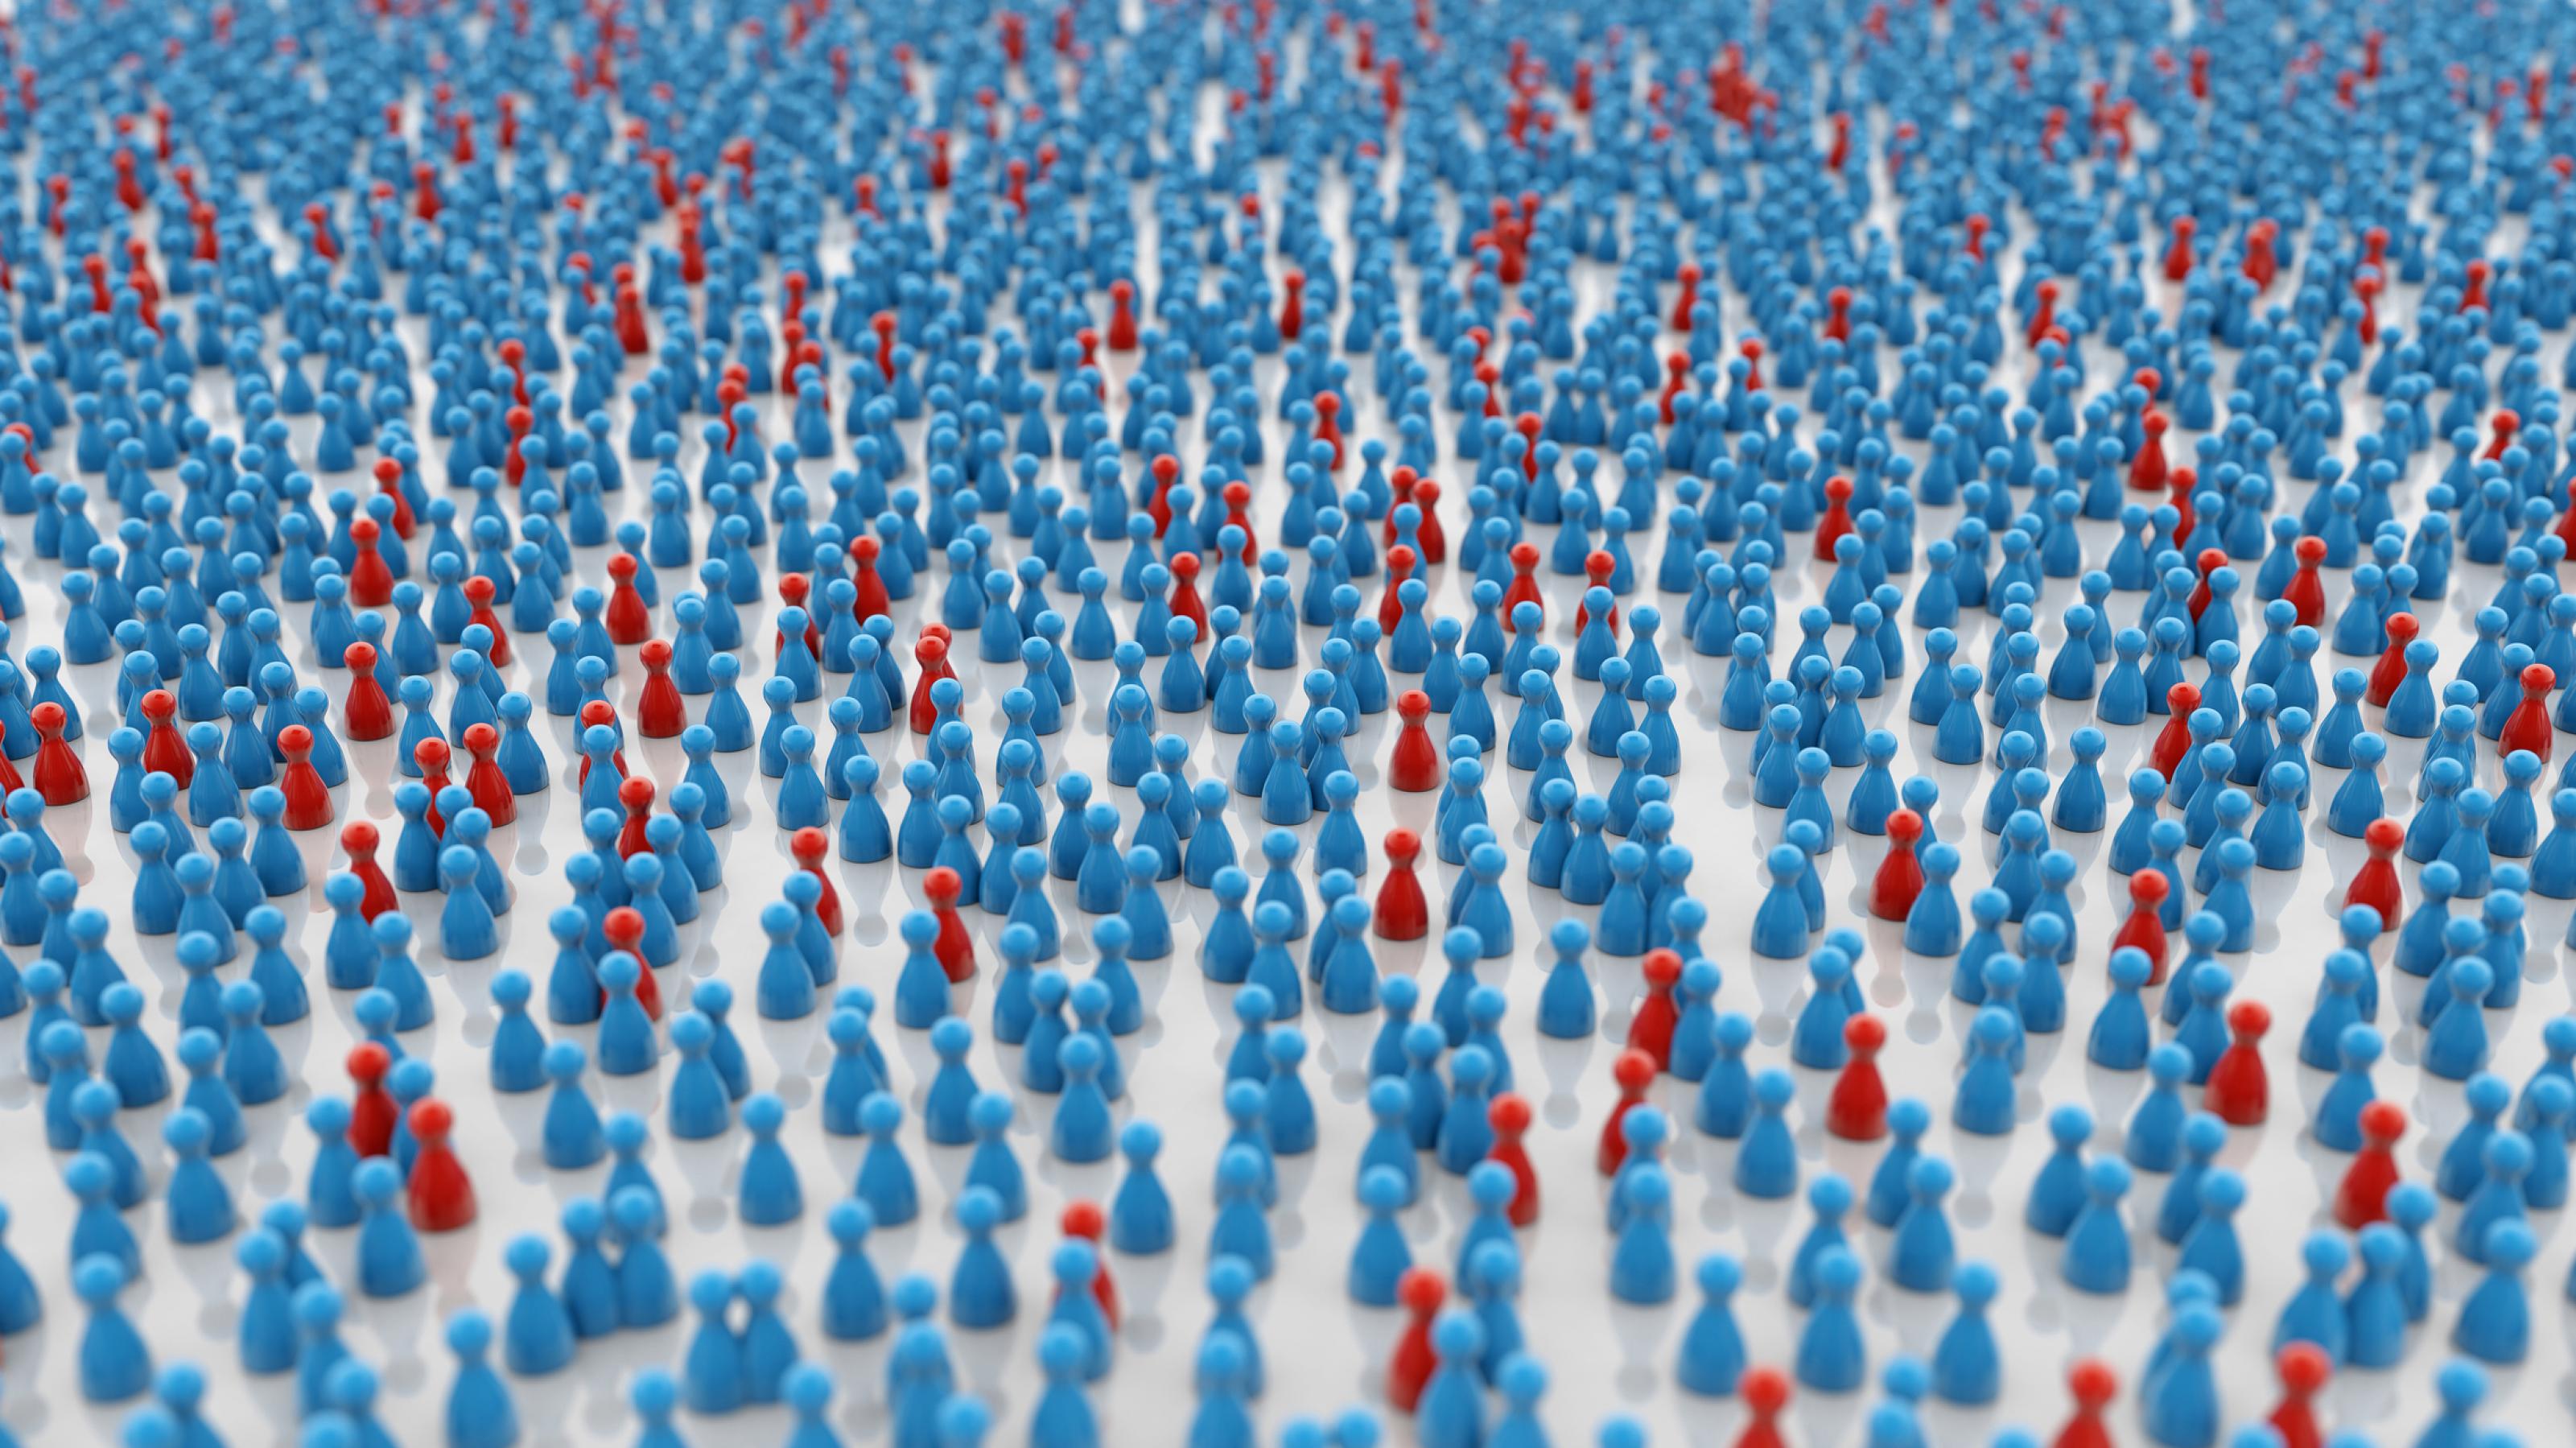 Wenige rote Spielfiguren unter vielen blauen als Sinnbild für die Ausbreitung der Covid-19-Pandemie